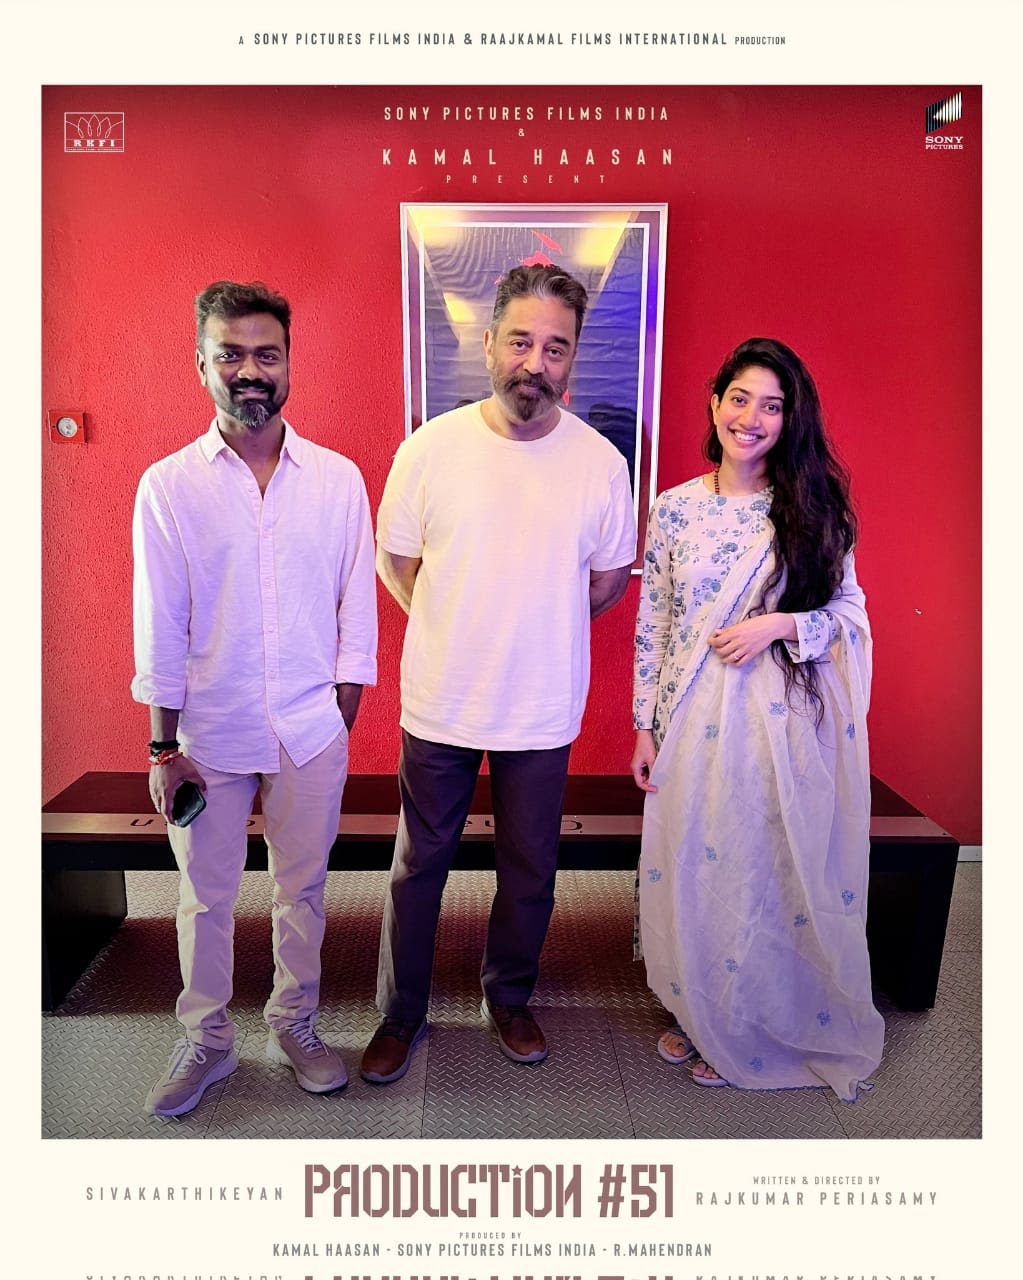 SivaKarthikeyan Talks about his next film with Kamal Haasan RKFI